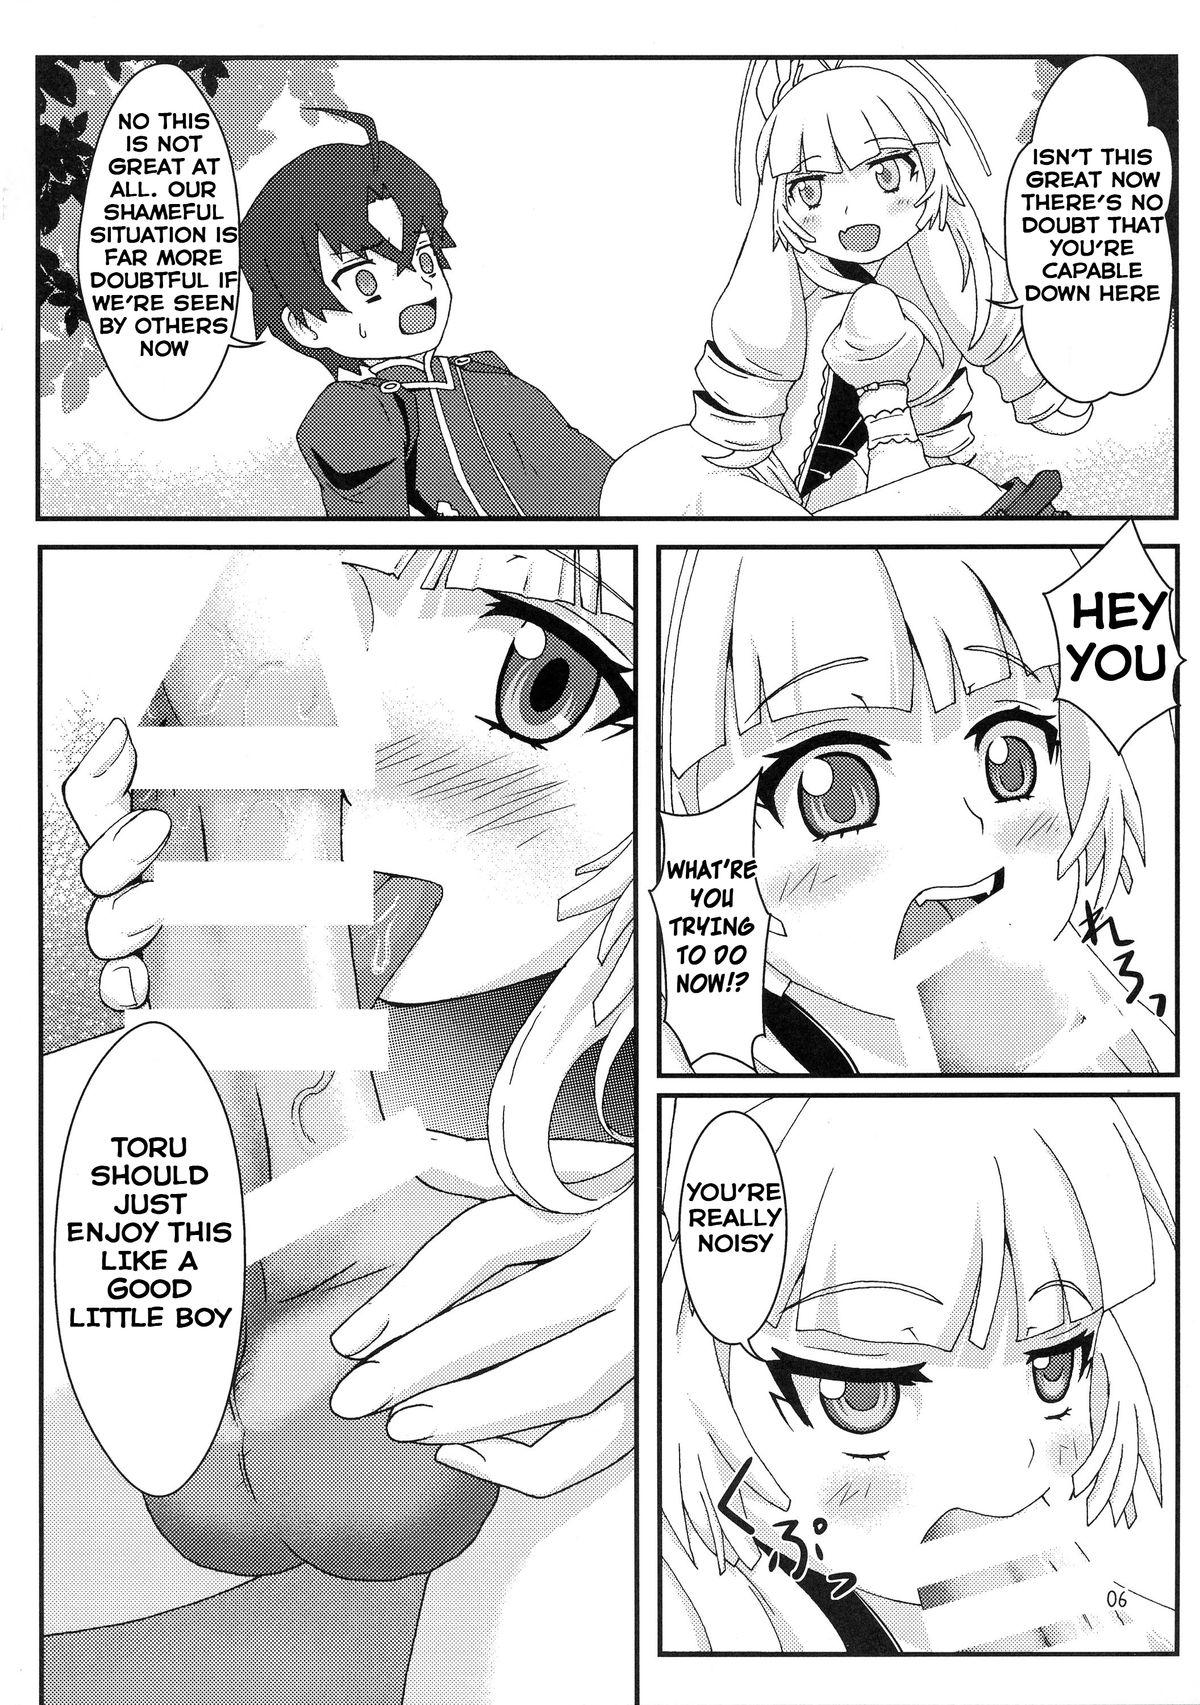 Exgirlfriend Dragoon Heart - Hitsugi no chaika Massage - Page 6